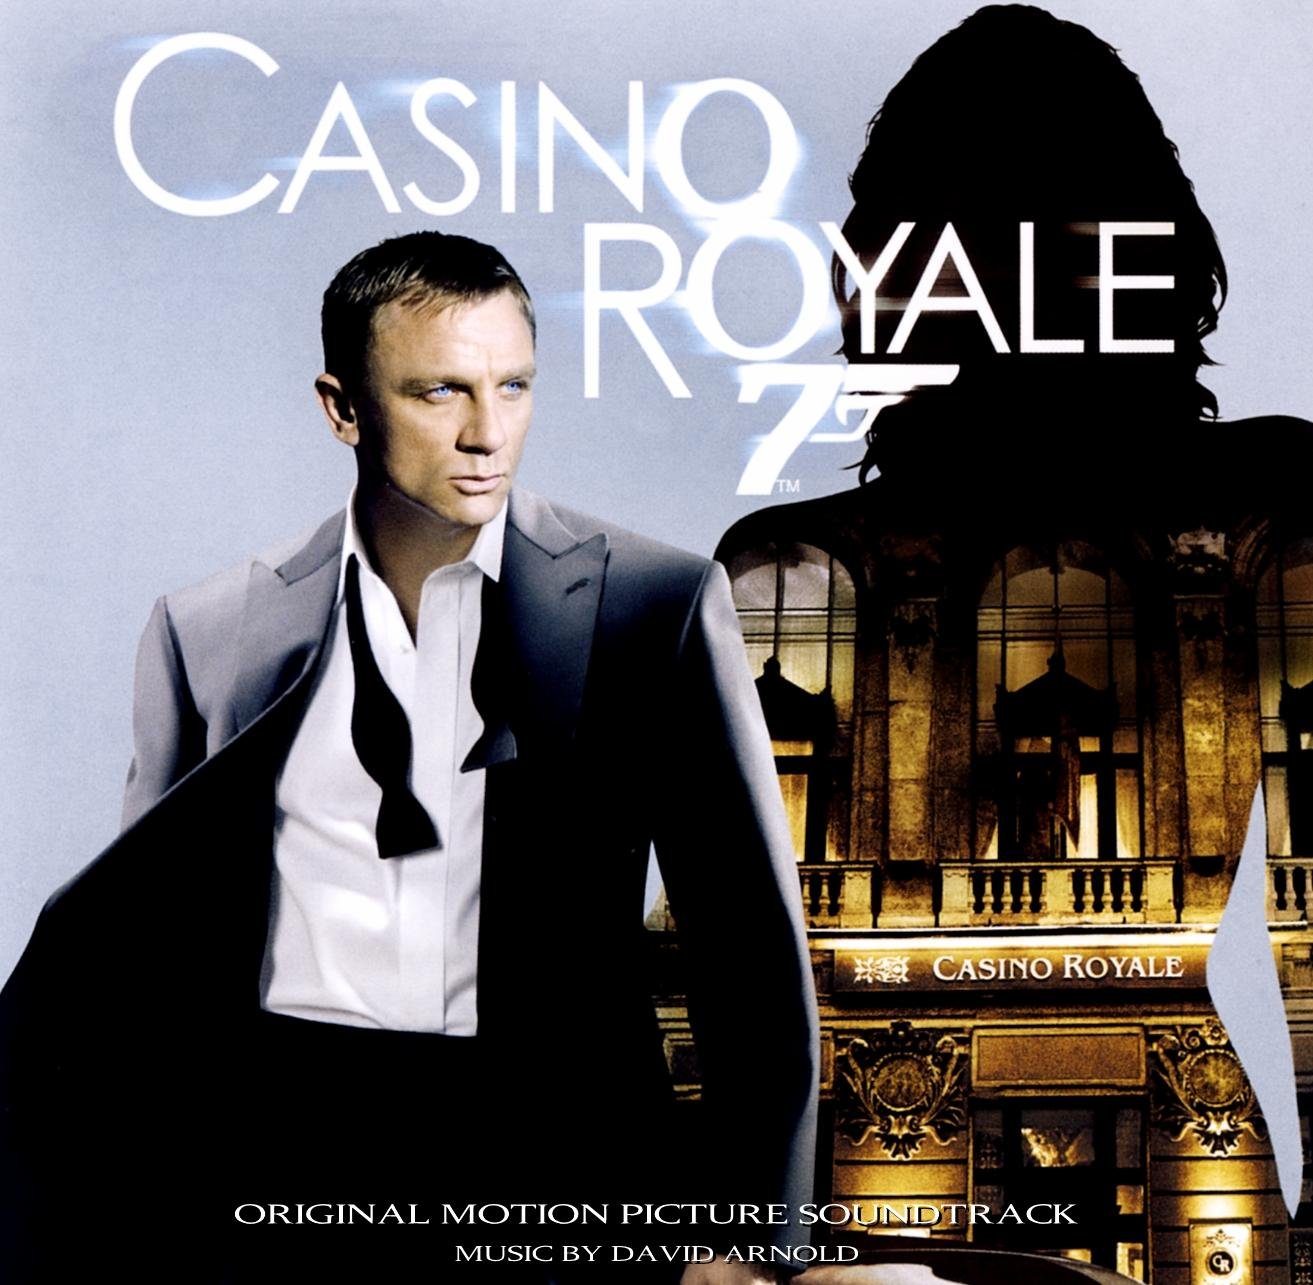 Казино рояль фильм 2006 саундтрек смотреть эдик играет в казино